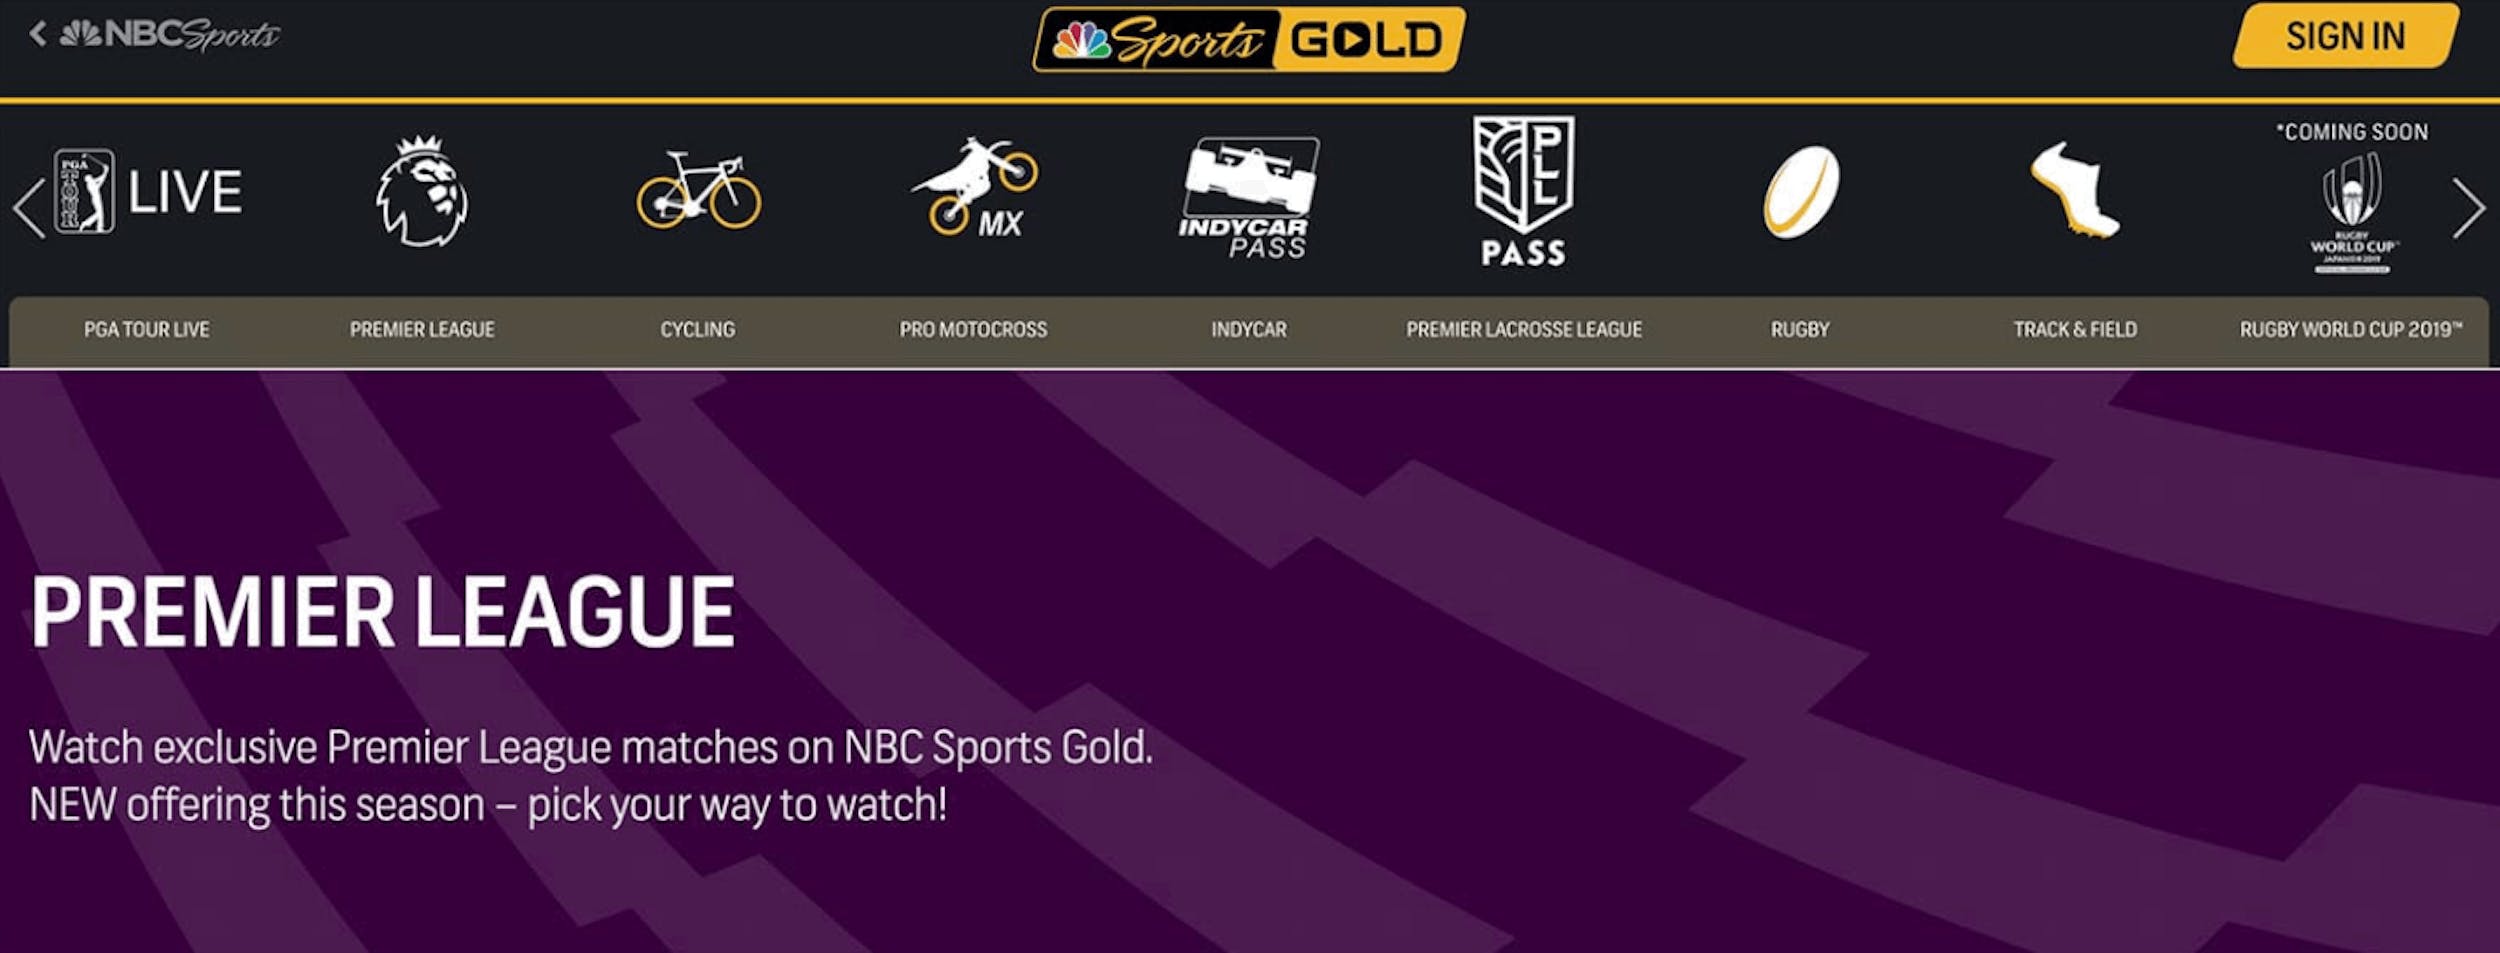 man united vs wolves live stream NBC sports gold